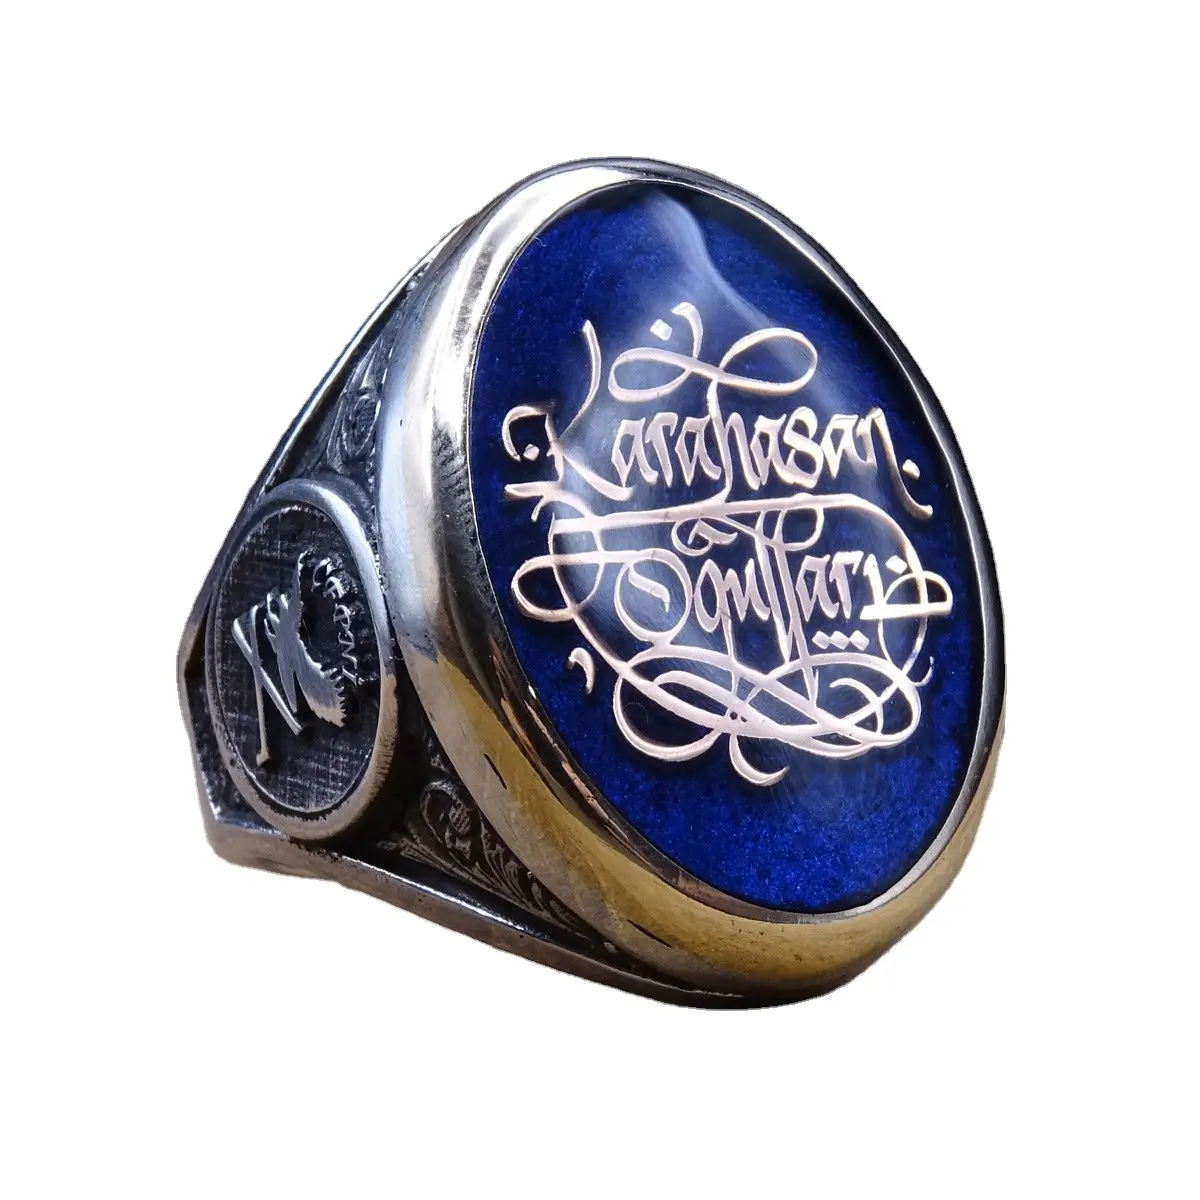 Großhandels preis Vintage Design Männer Arabische Schrift ringe Vintage Silber Sterling Islamischer Ring für Männer